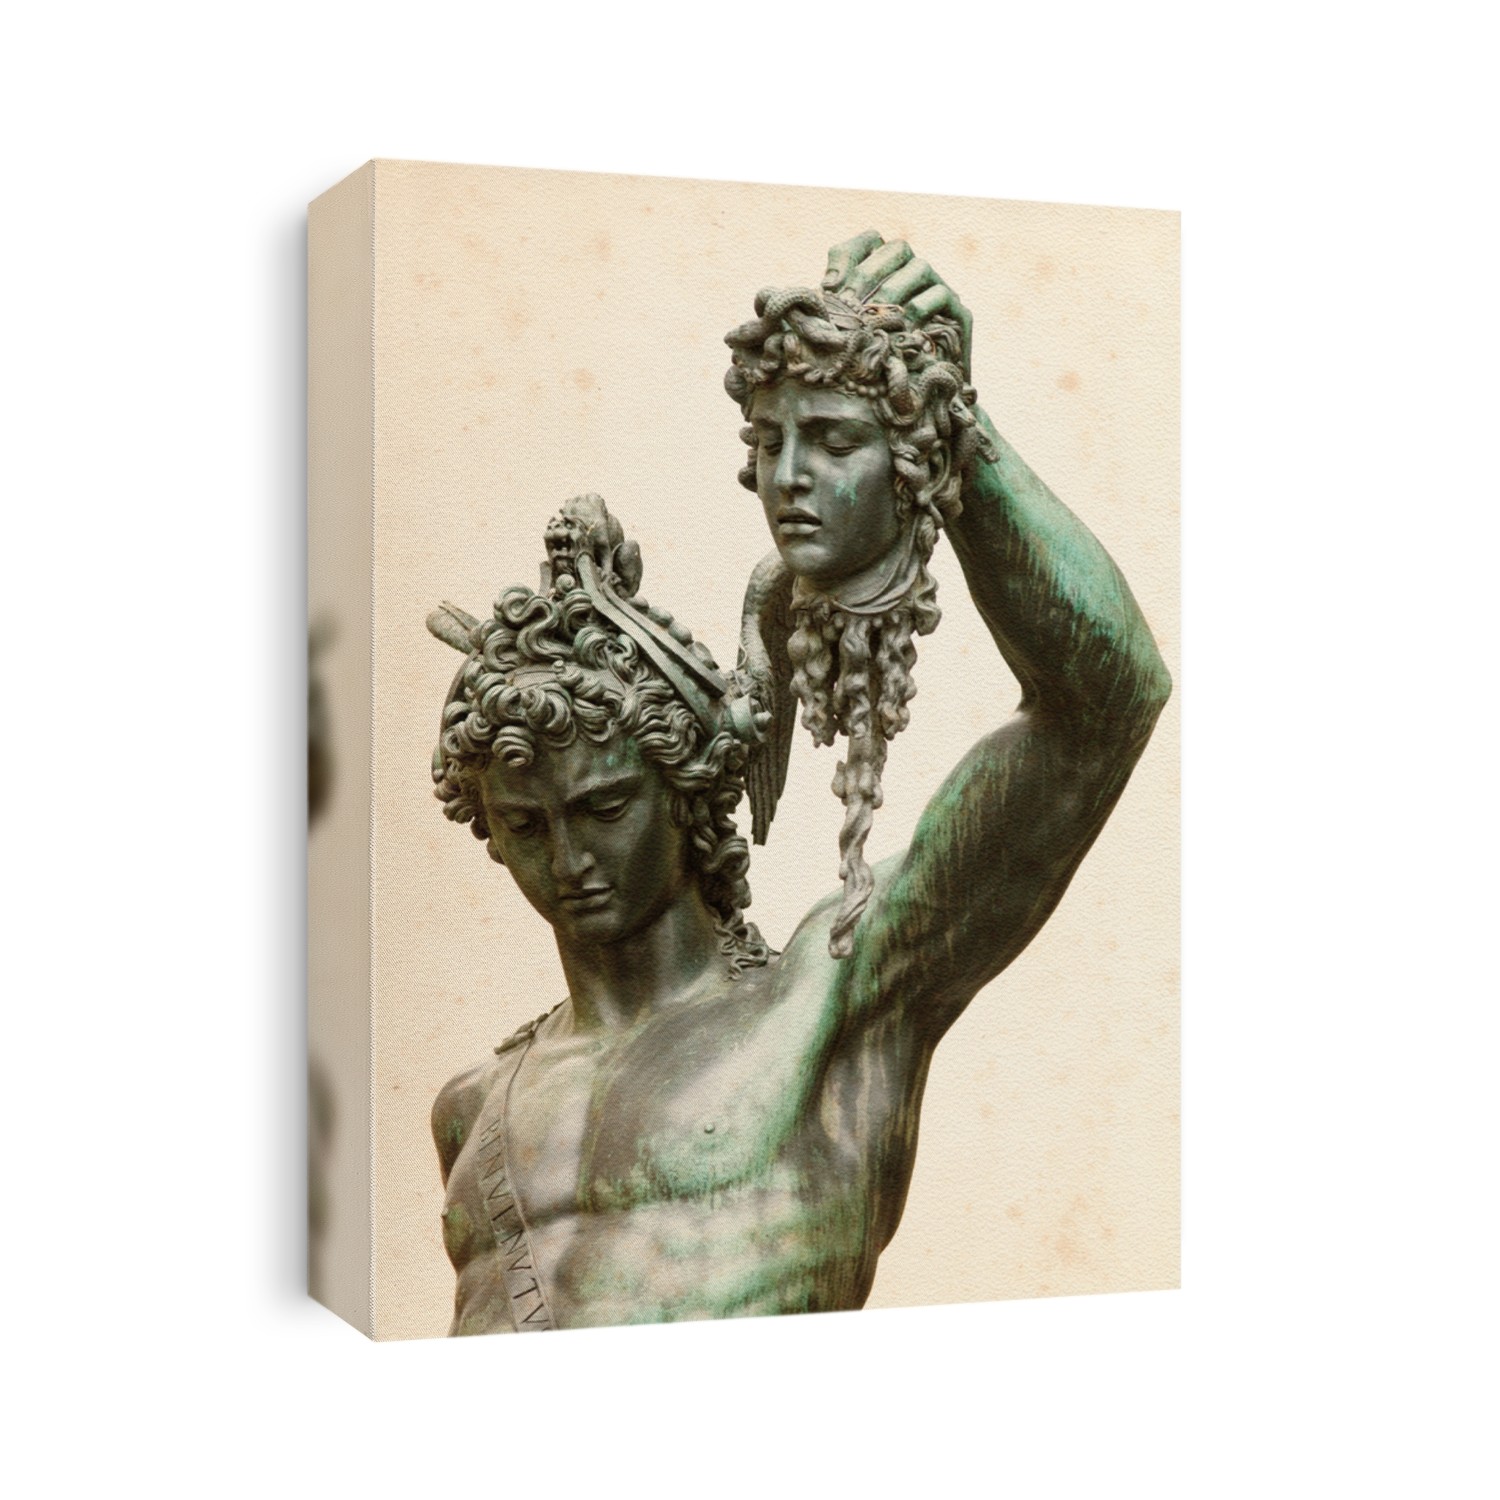 Perseus with the head of Medusa, by Benvenuto Cellini, in Loggia de' Lanzi, Piazza della Signoria, Florence